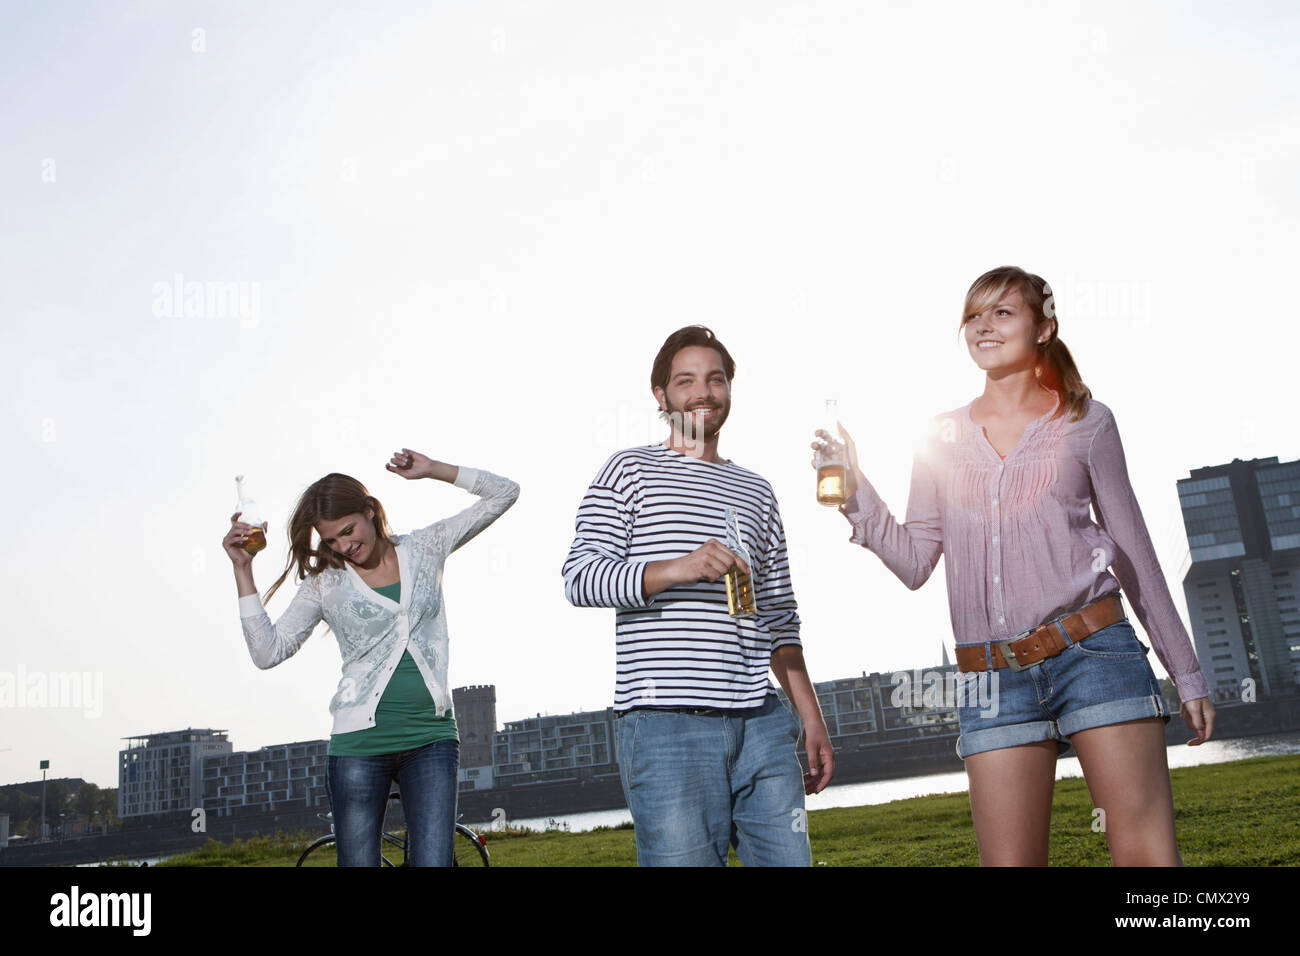 Deutschland, Köln, junger Mann und Frau tanzt mit Bierflaschen, Lächeln Stockfoto